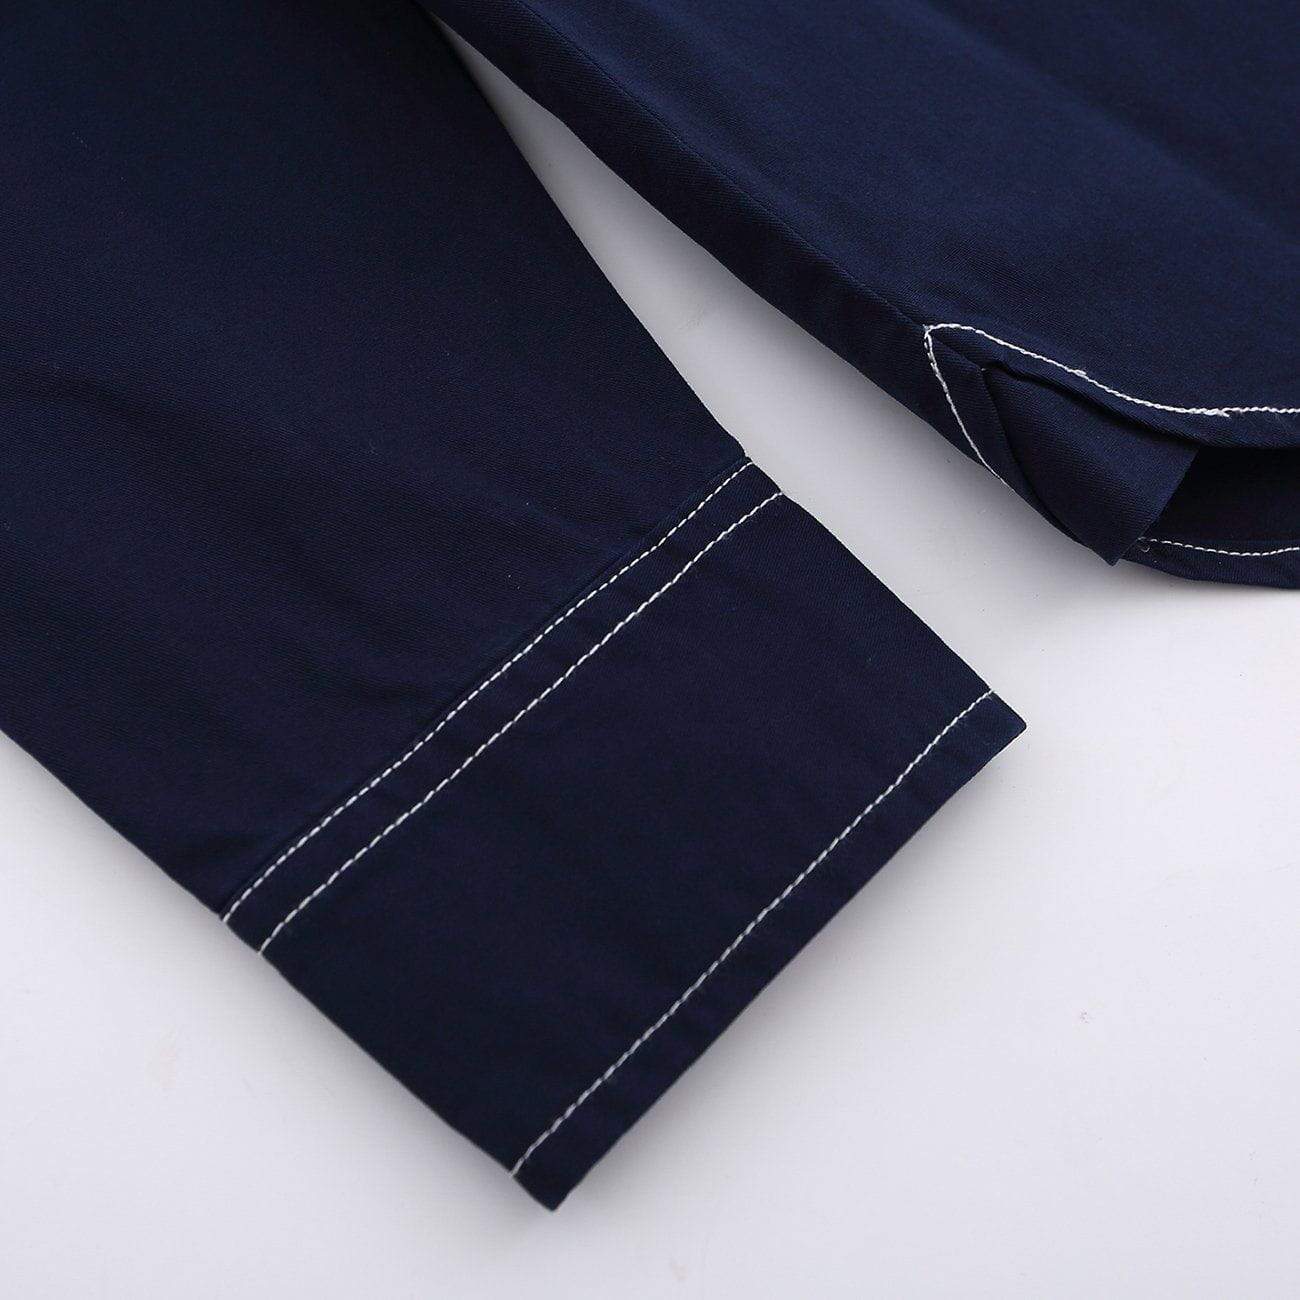 JUSTNOTAG Open Line Design Long Sleeve Shirt